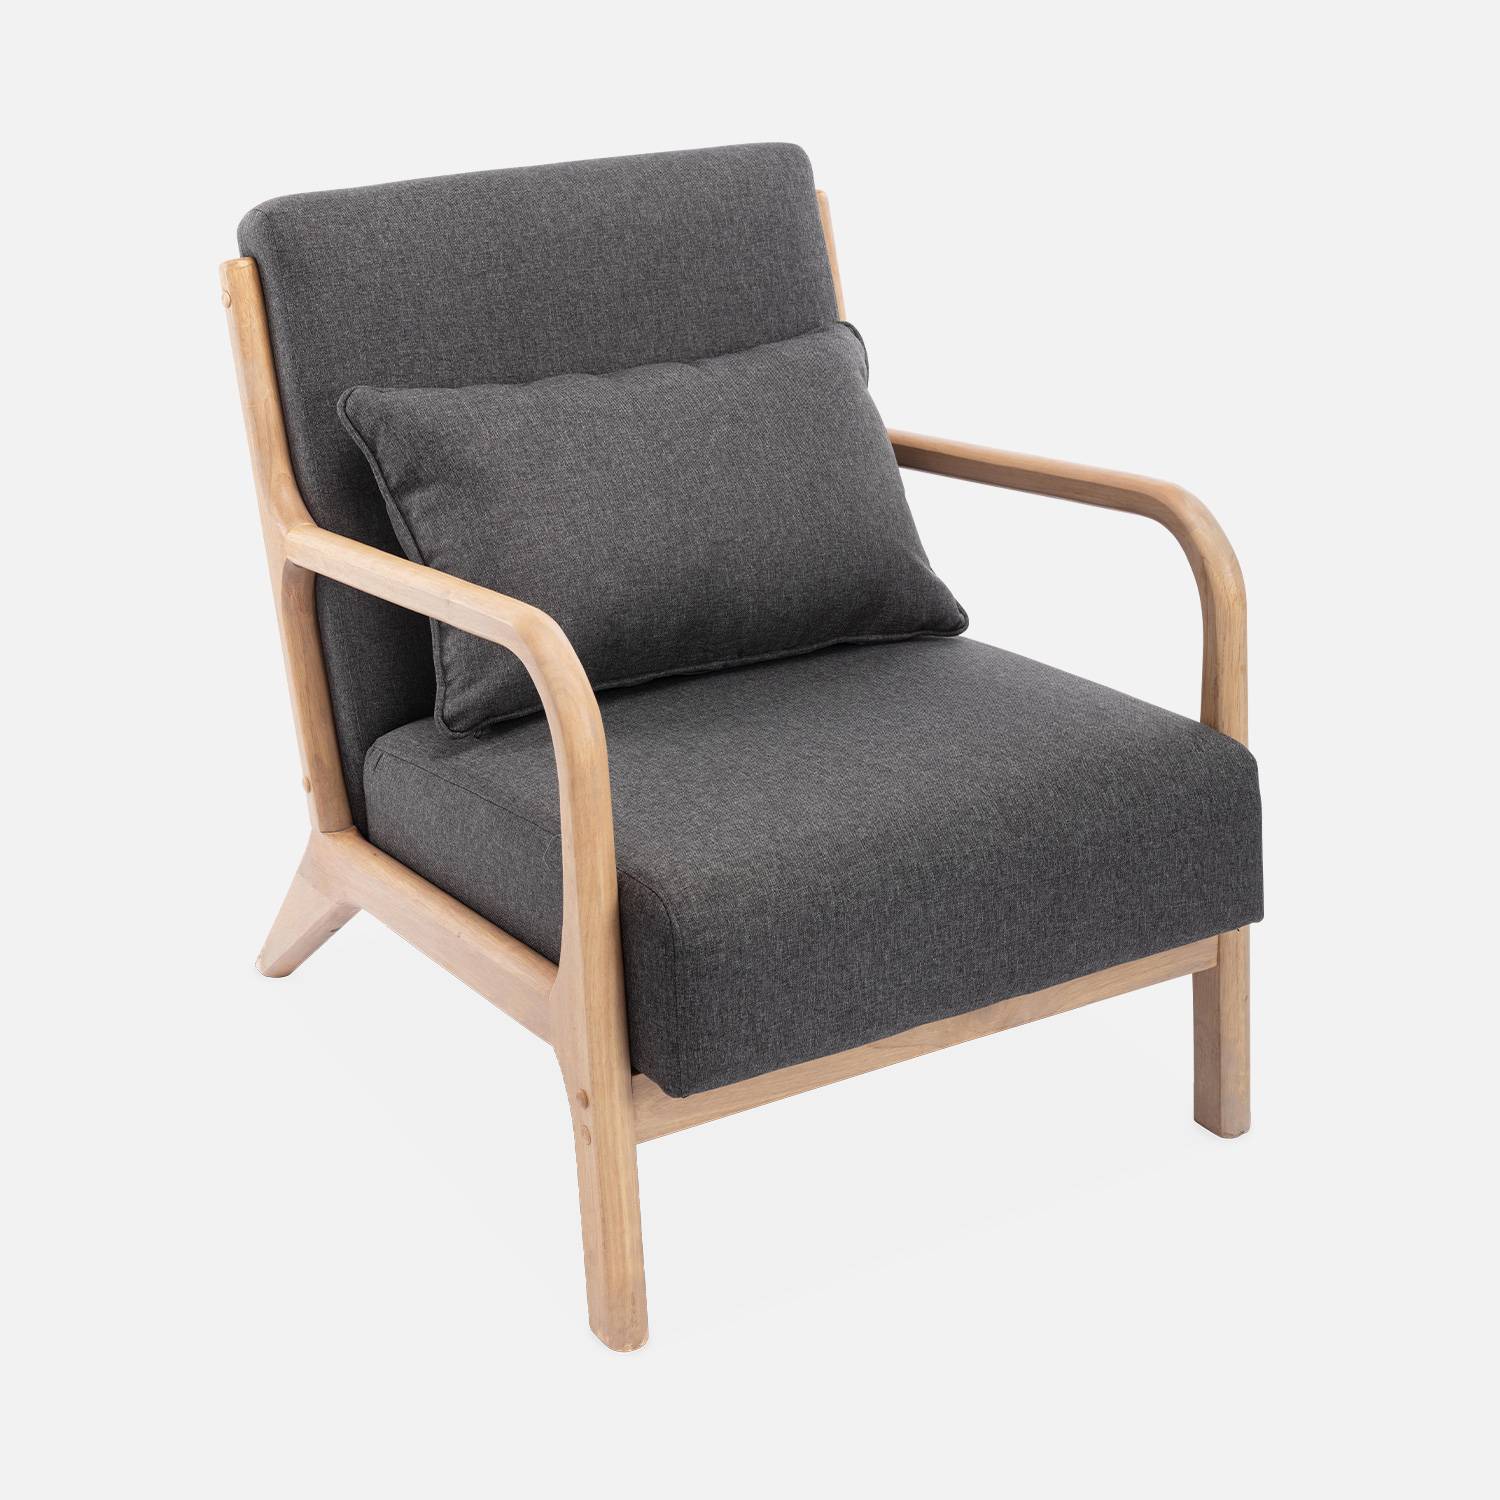 Design fauteuil van hout en stof, 1 vaste rechte zitting, kompaspoten, Scandinavische stijl Photo4